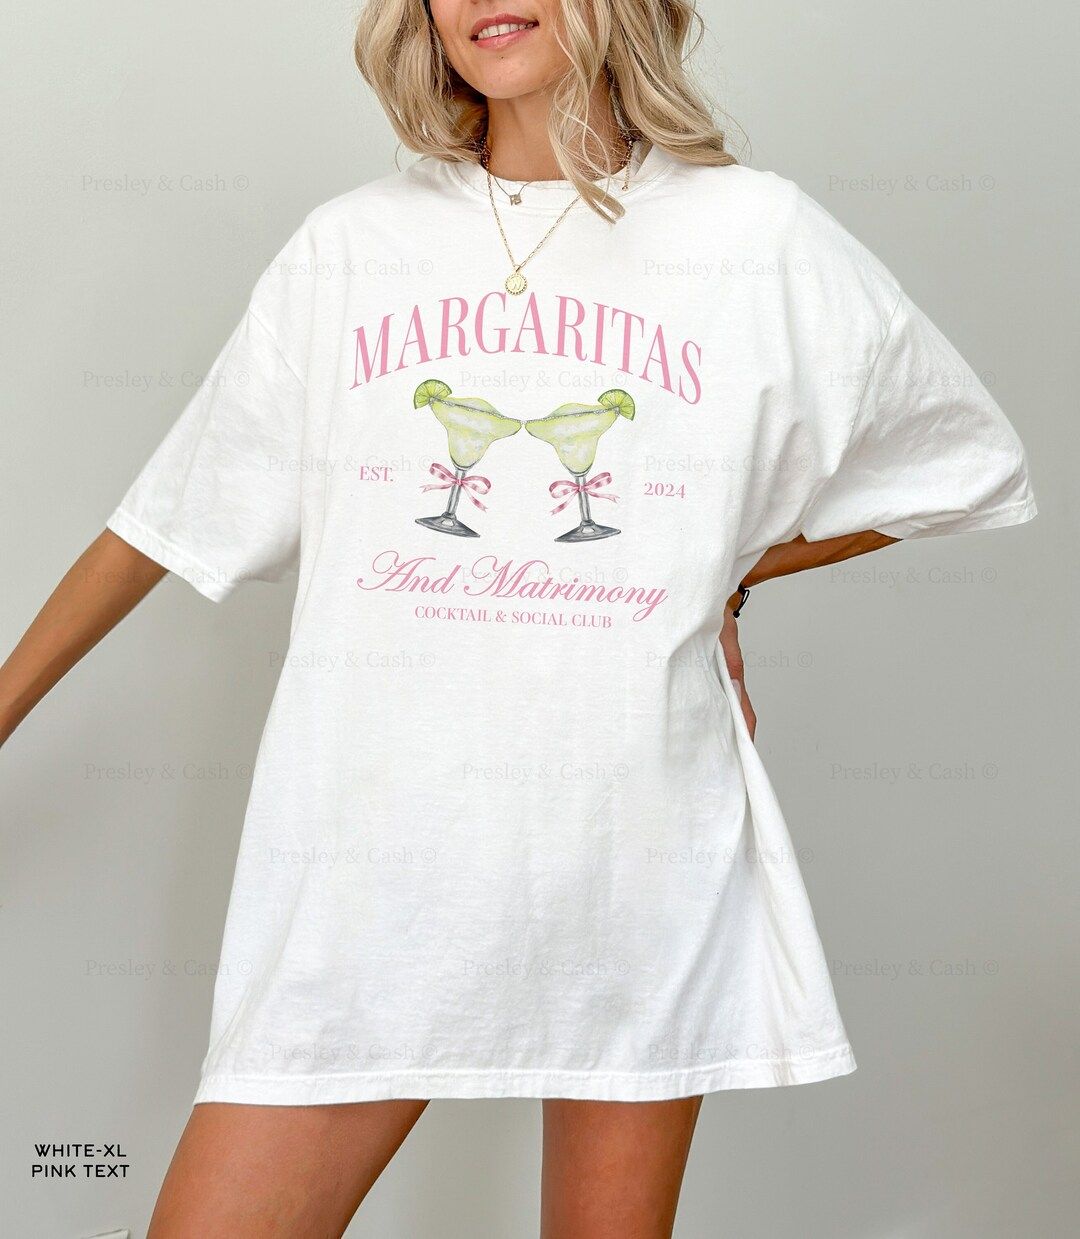 Margaritas and Matrimony Bachelorette Shirts Custom Social Club Shirt Tequila Bachelorette Merch ... | Etsy (US)